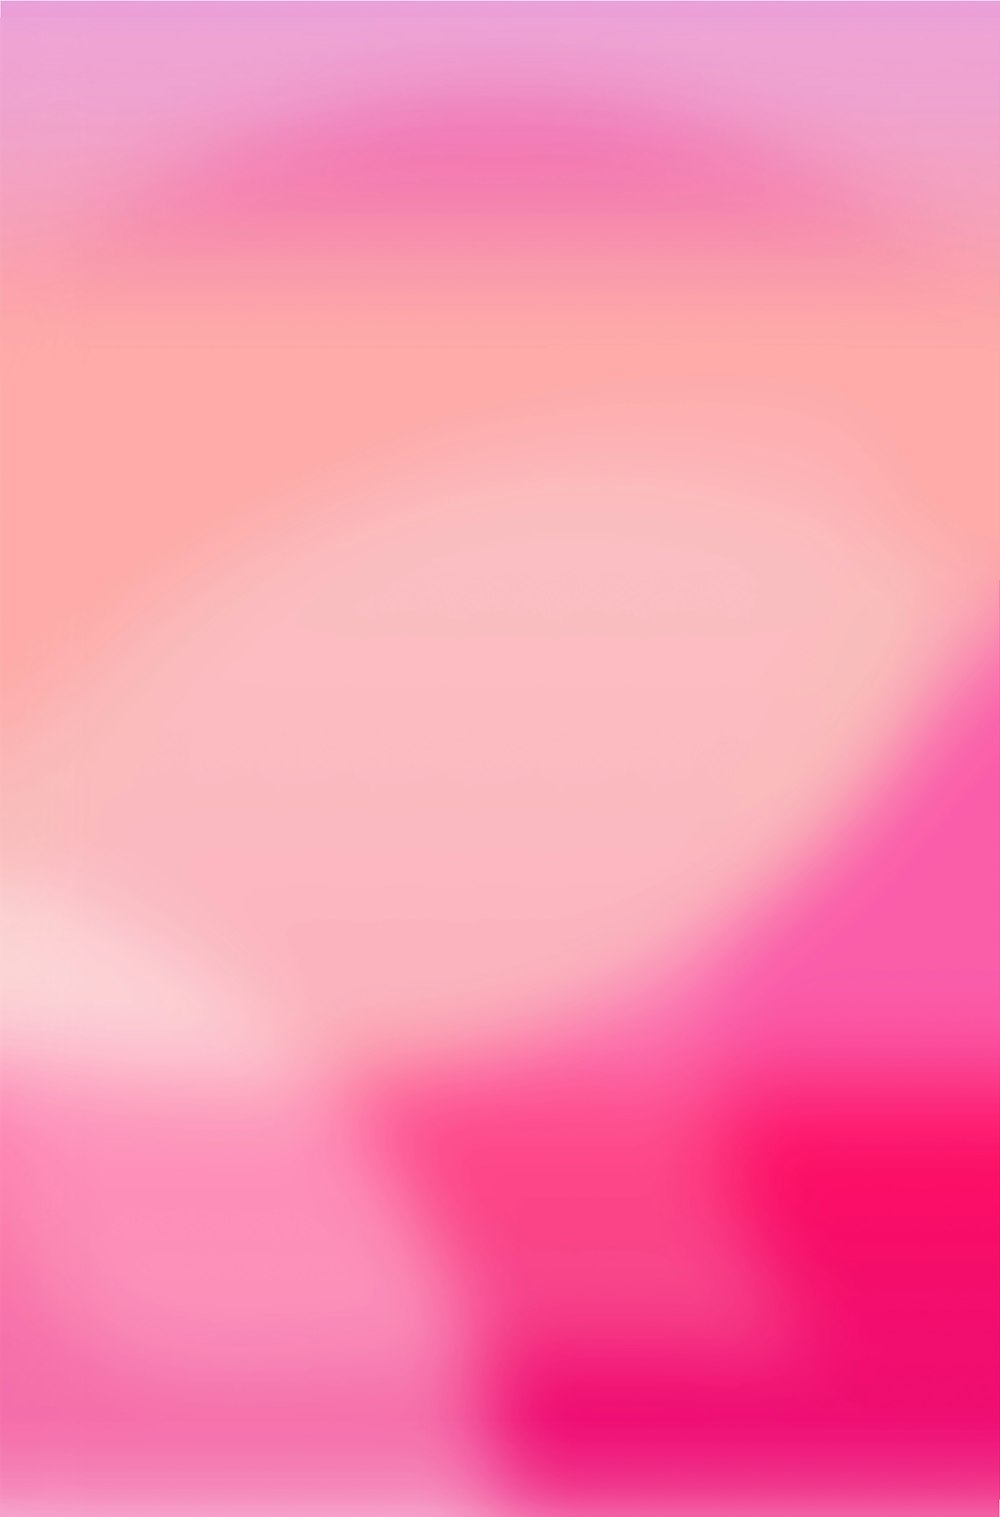 Foto Ilustração de luz rosa e branca – Imagem de Rosa grátis no Unsplash